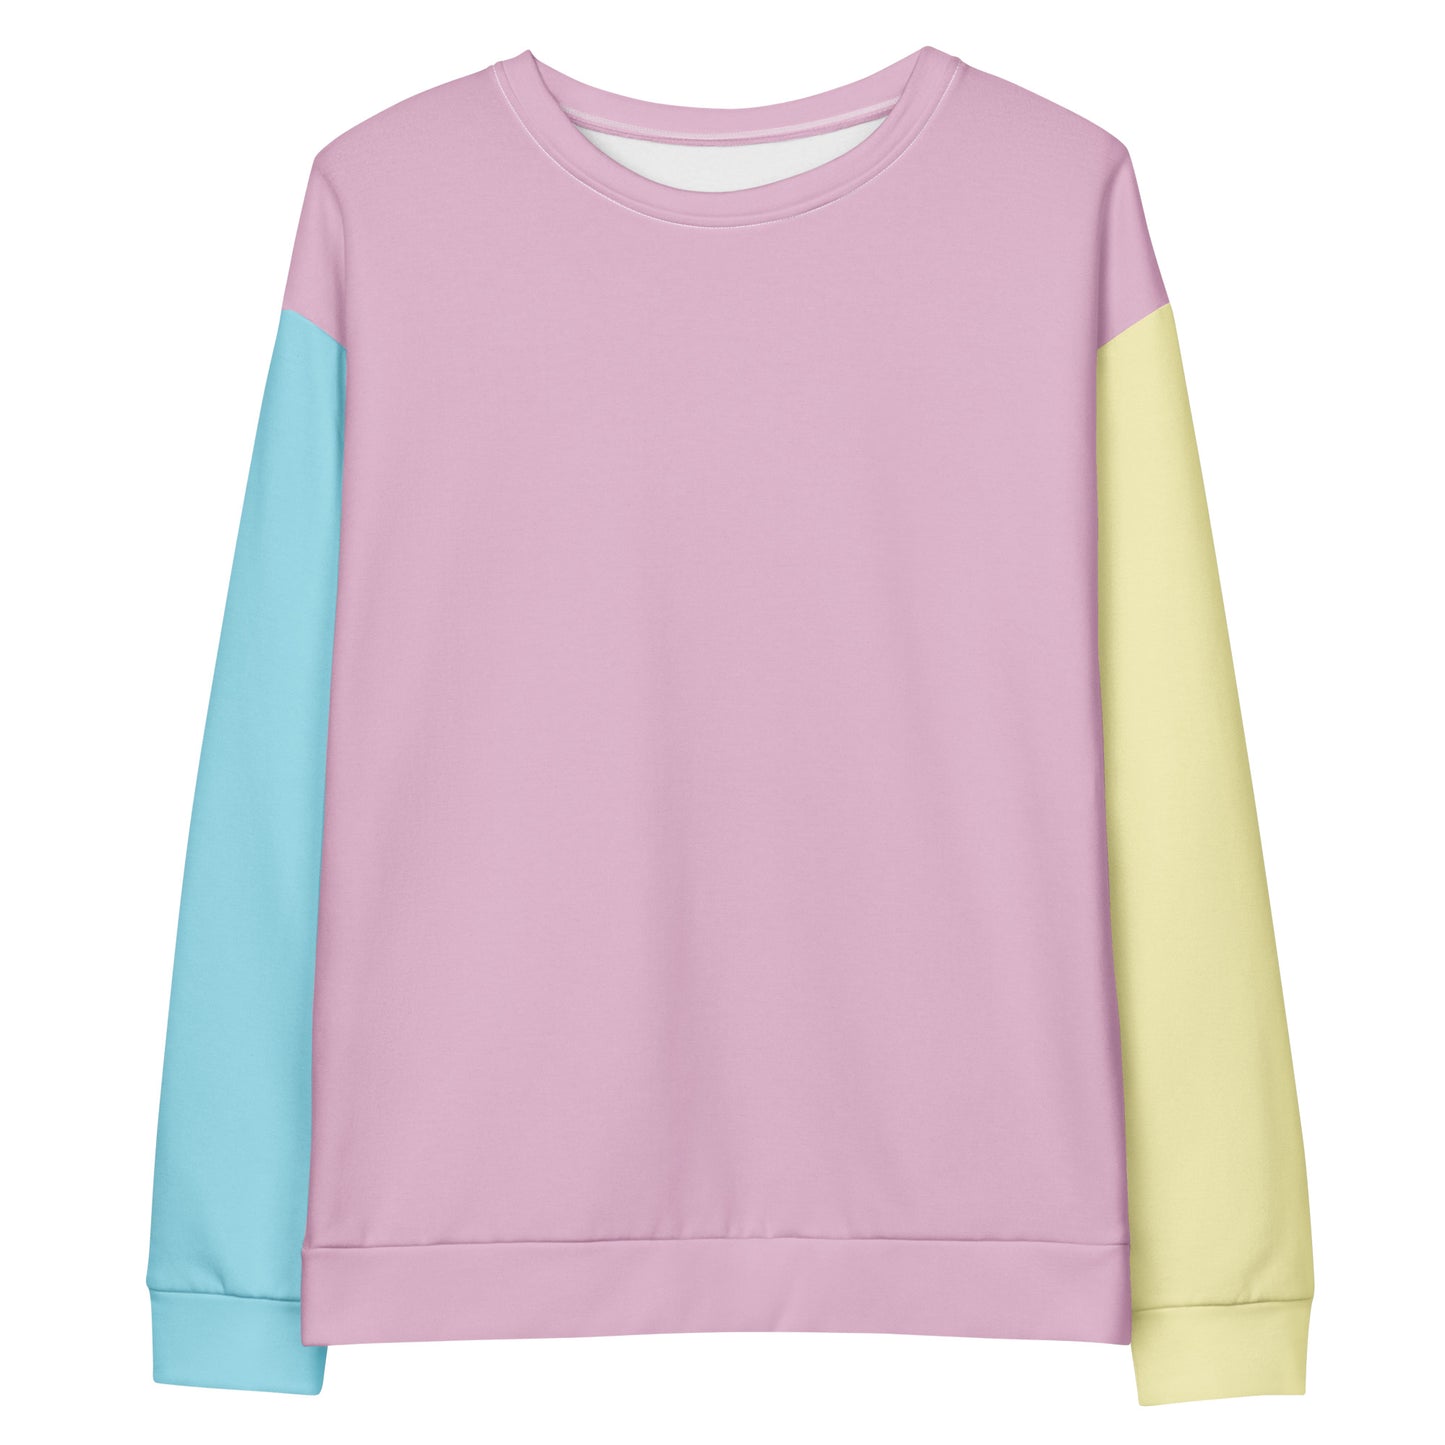 Sweter z blokiem kolorów MATAKUNA